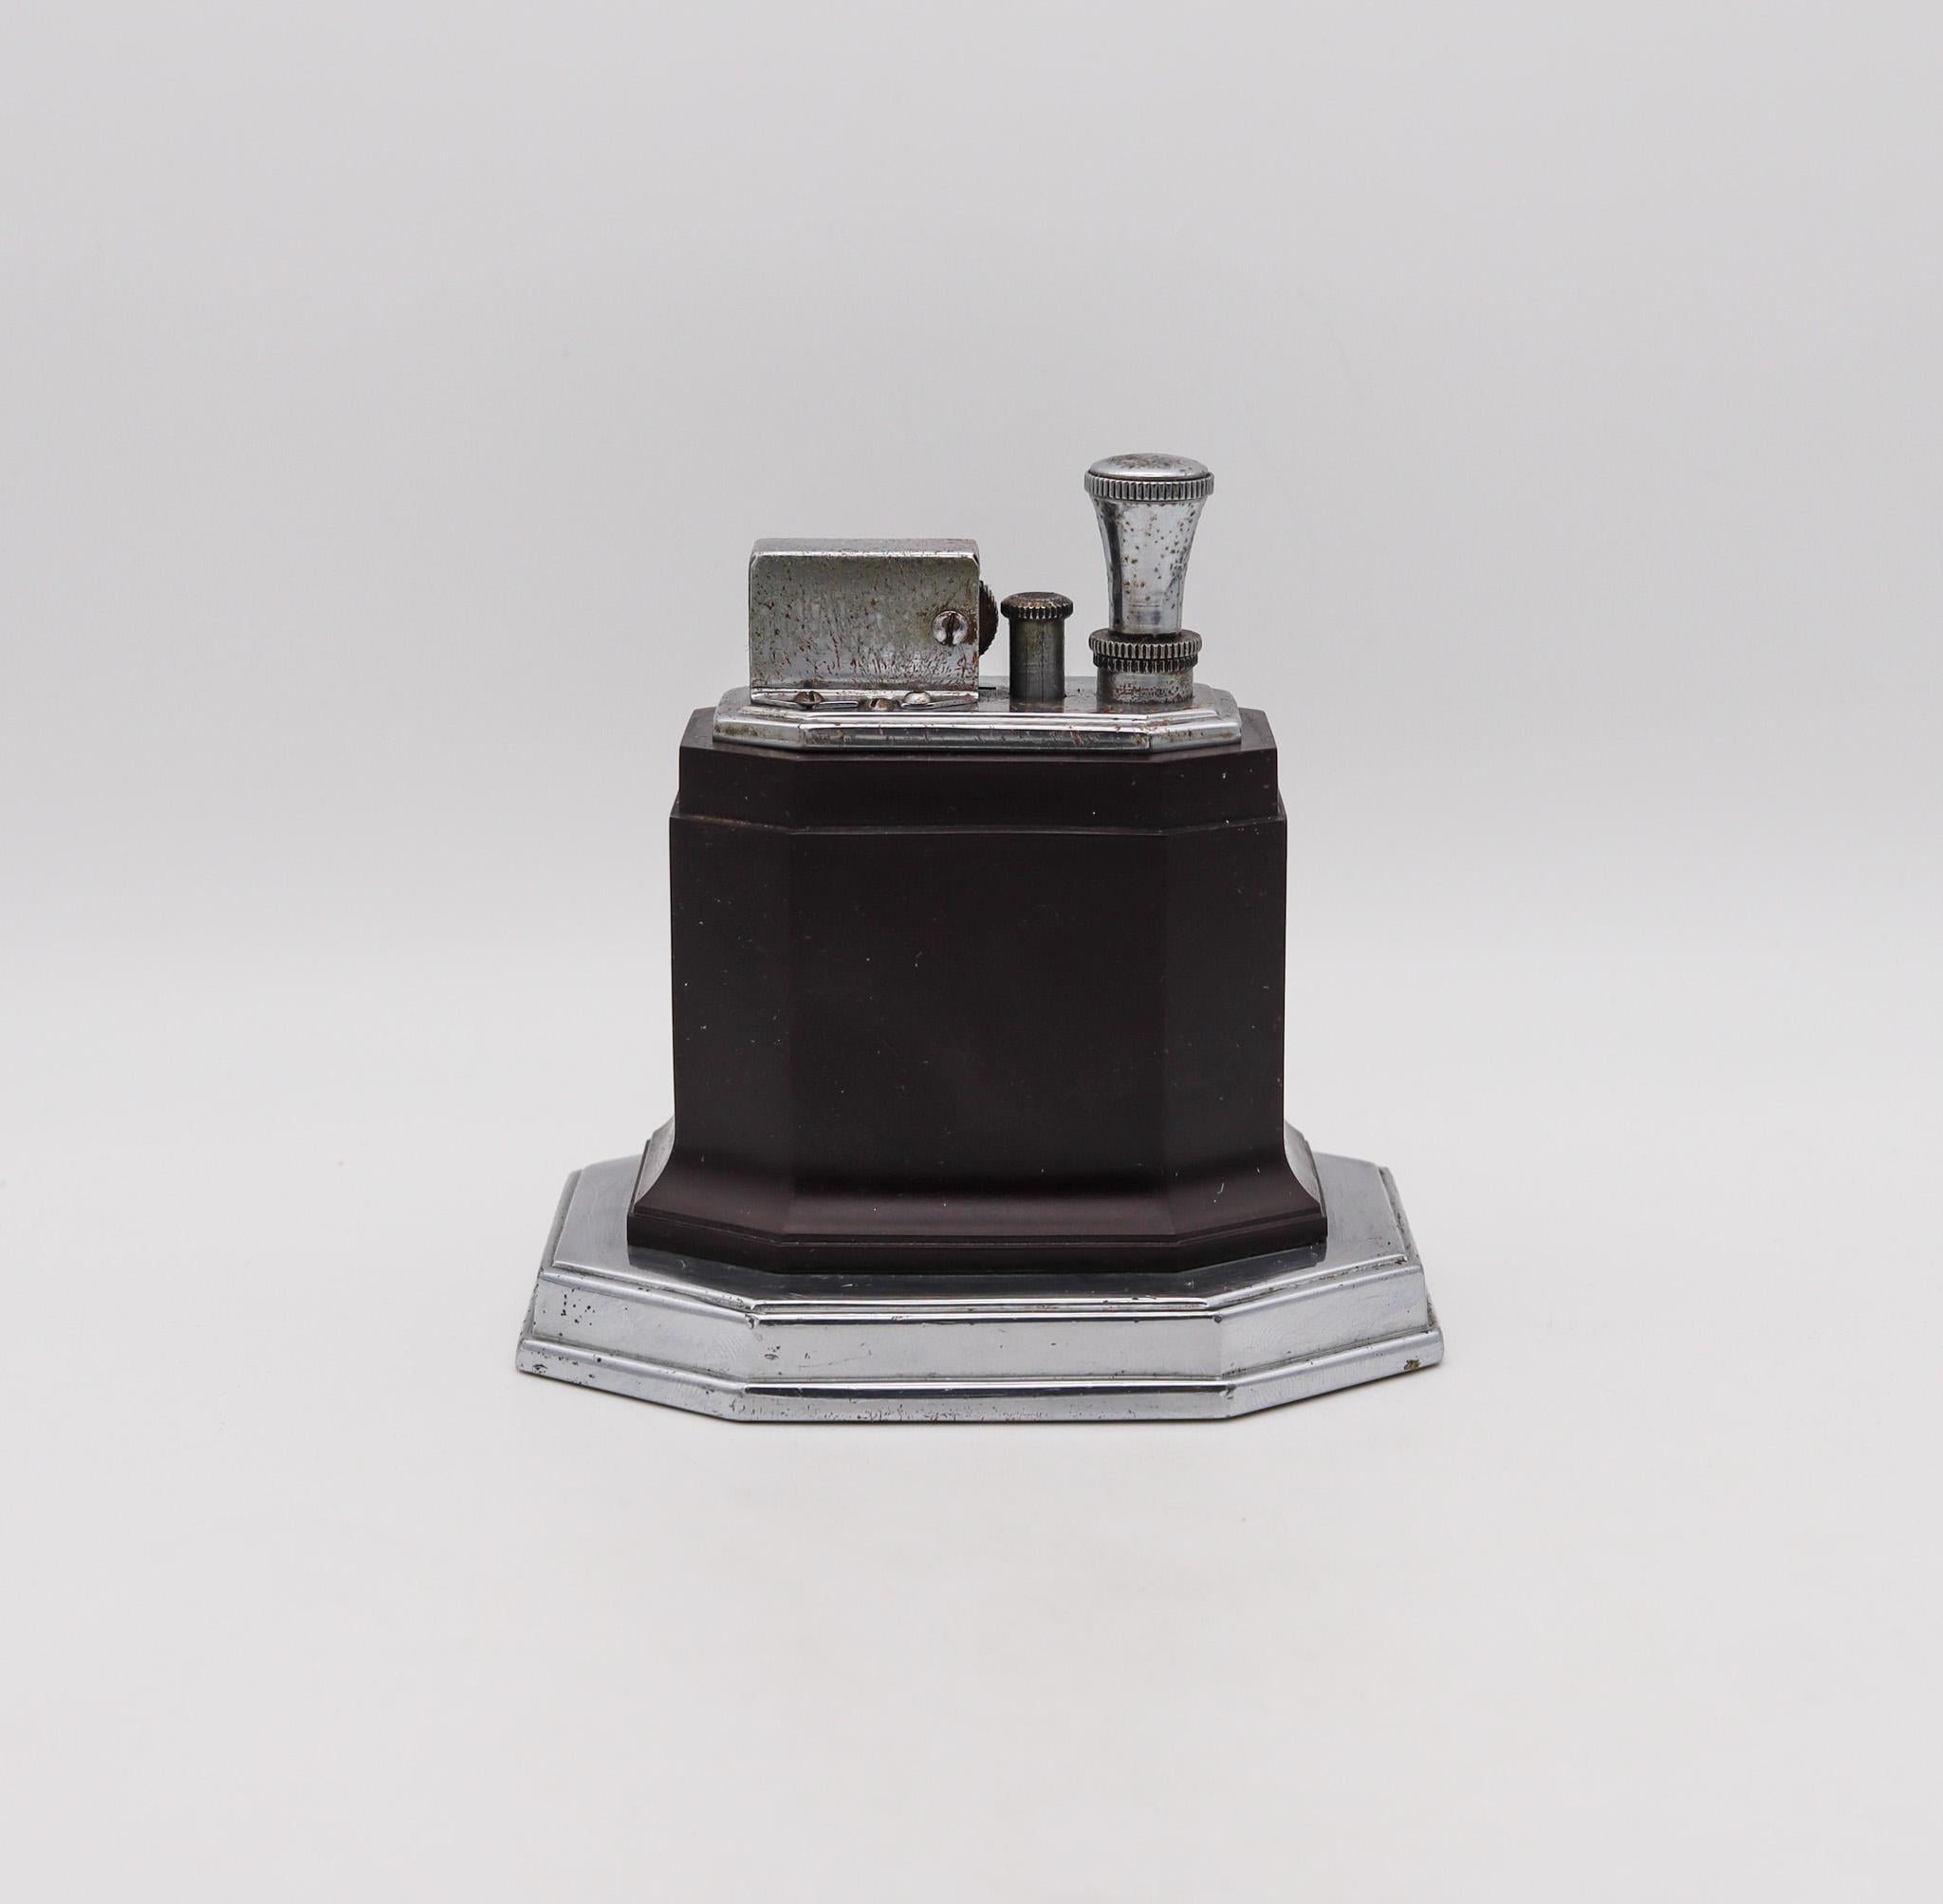 Un briquet de bureau Octette conçu par Ronson.

Ce briquet de table Ronson Touch-Tip Octette a été fabriqué entre 1935 et 1951 par la société Ronson Art Metal Works Inc. située à Newark, New Jersey aux États-Unis. Ce briquet a marqué le début d'une